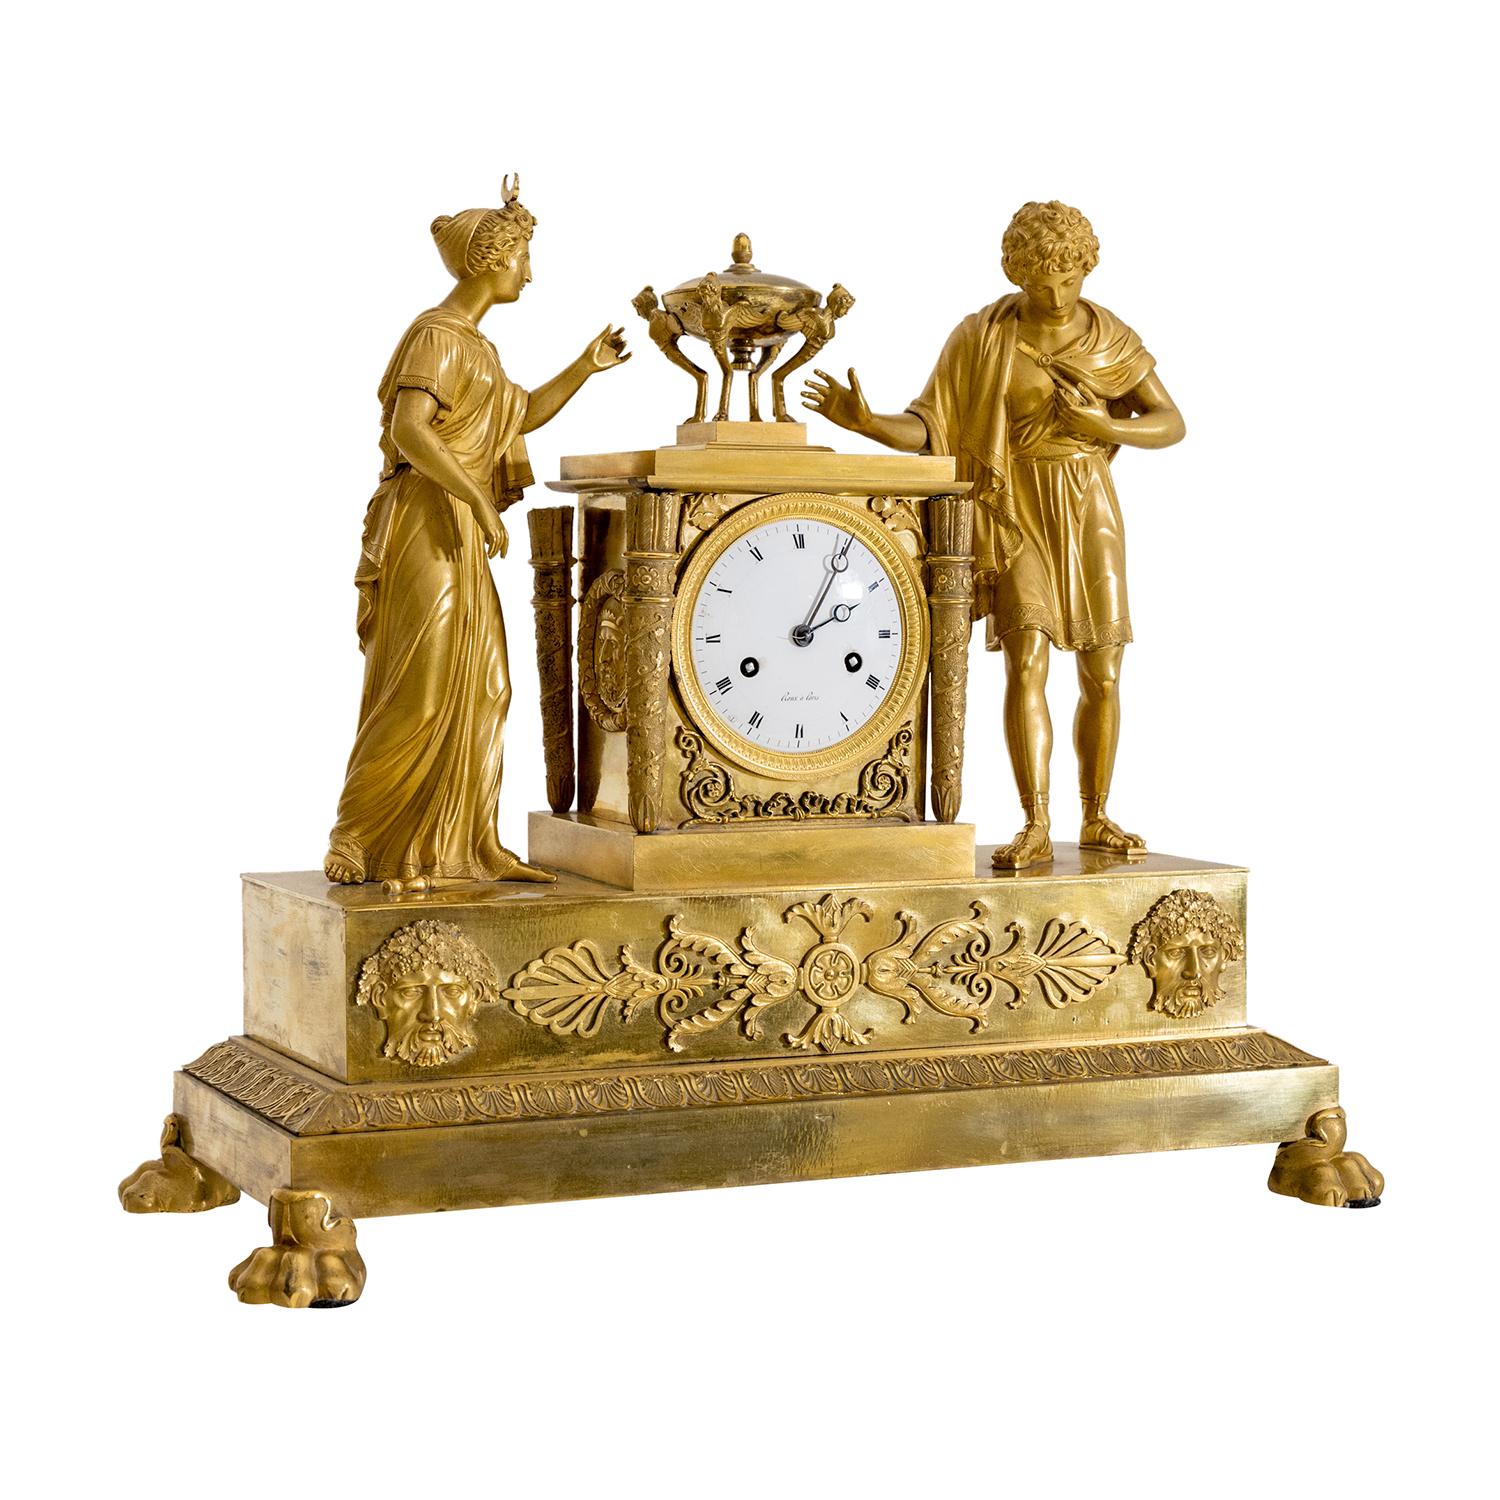 Pendule de table française ancienne en or, pendule en bronze doré à la main, en bon état. Le cadran circulaire en émail de la pendule parisienne est détaillé avec des chiffres romains sur fond blanc, particularisés par un anneau en bronze poli.